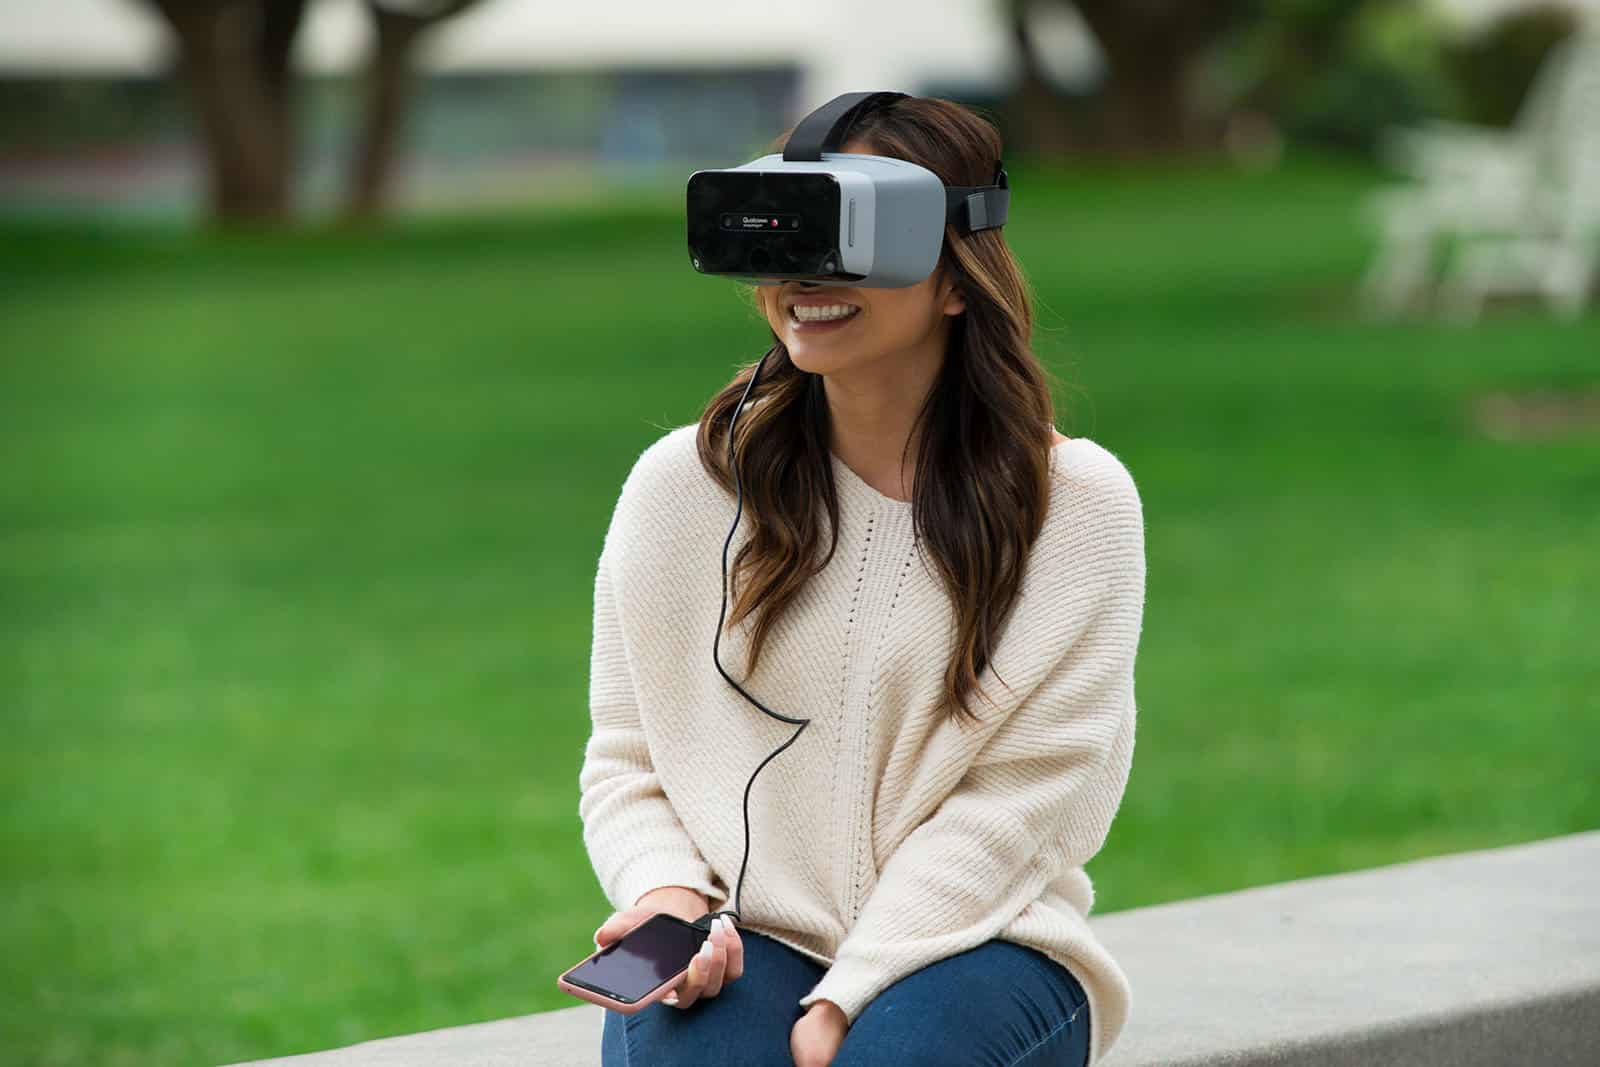 Qualcomm a présenté un casque de VR conçu en interne pour servir de "design de référence". Il arbore une puce Snapdragon XR1 créée spécialement pour la réalité augmentée.